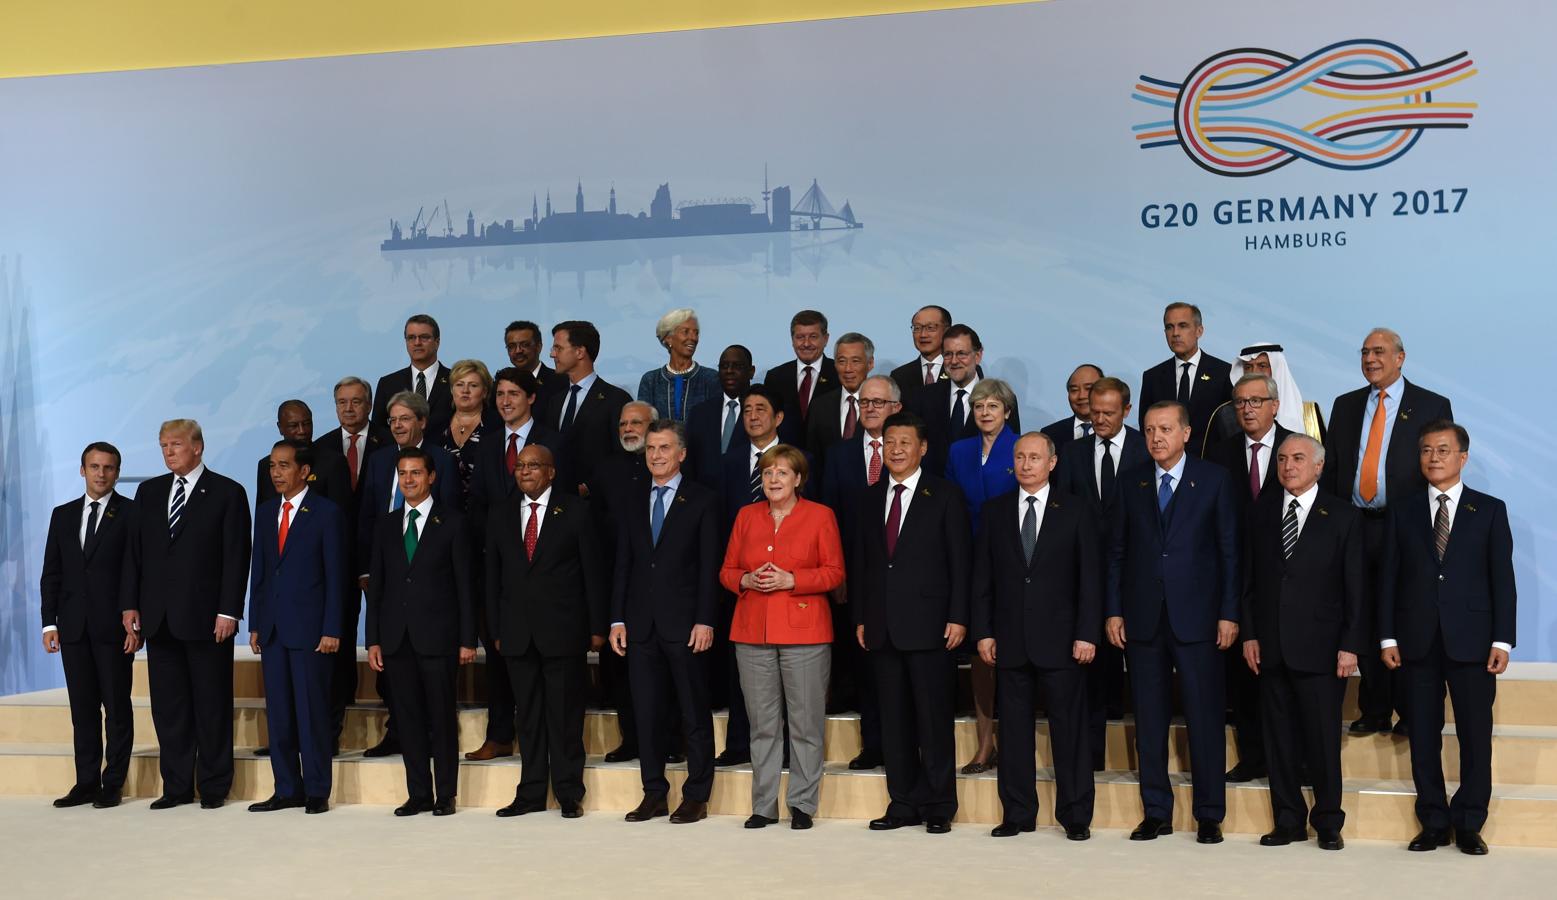 Fotografía grupal de la cumbre del G-20 en la que aparecen todos los líderes internacionales